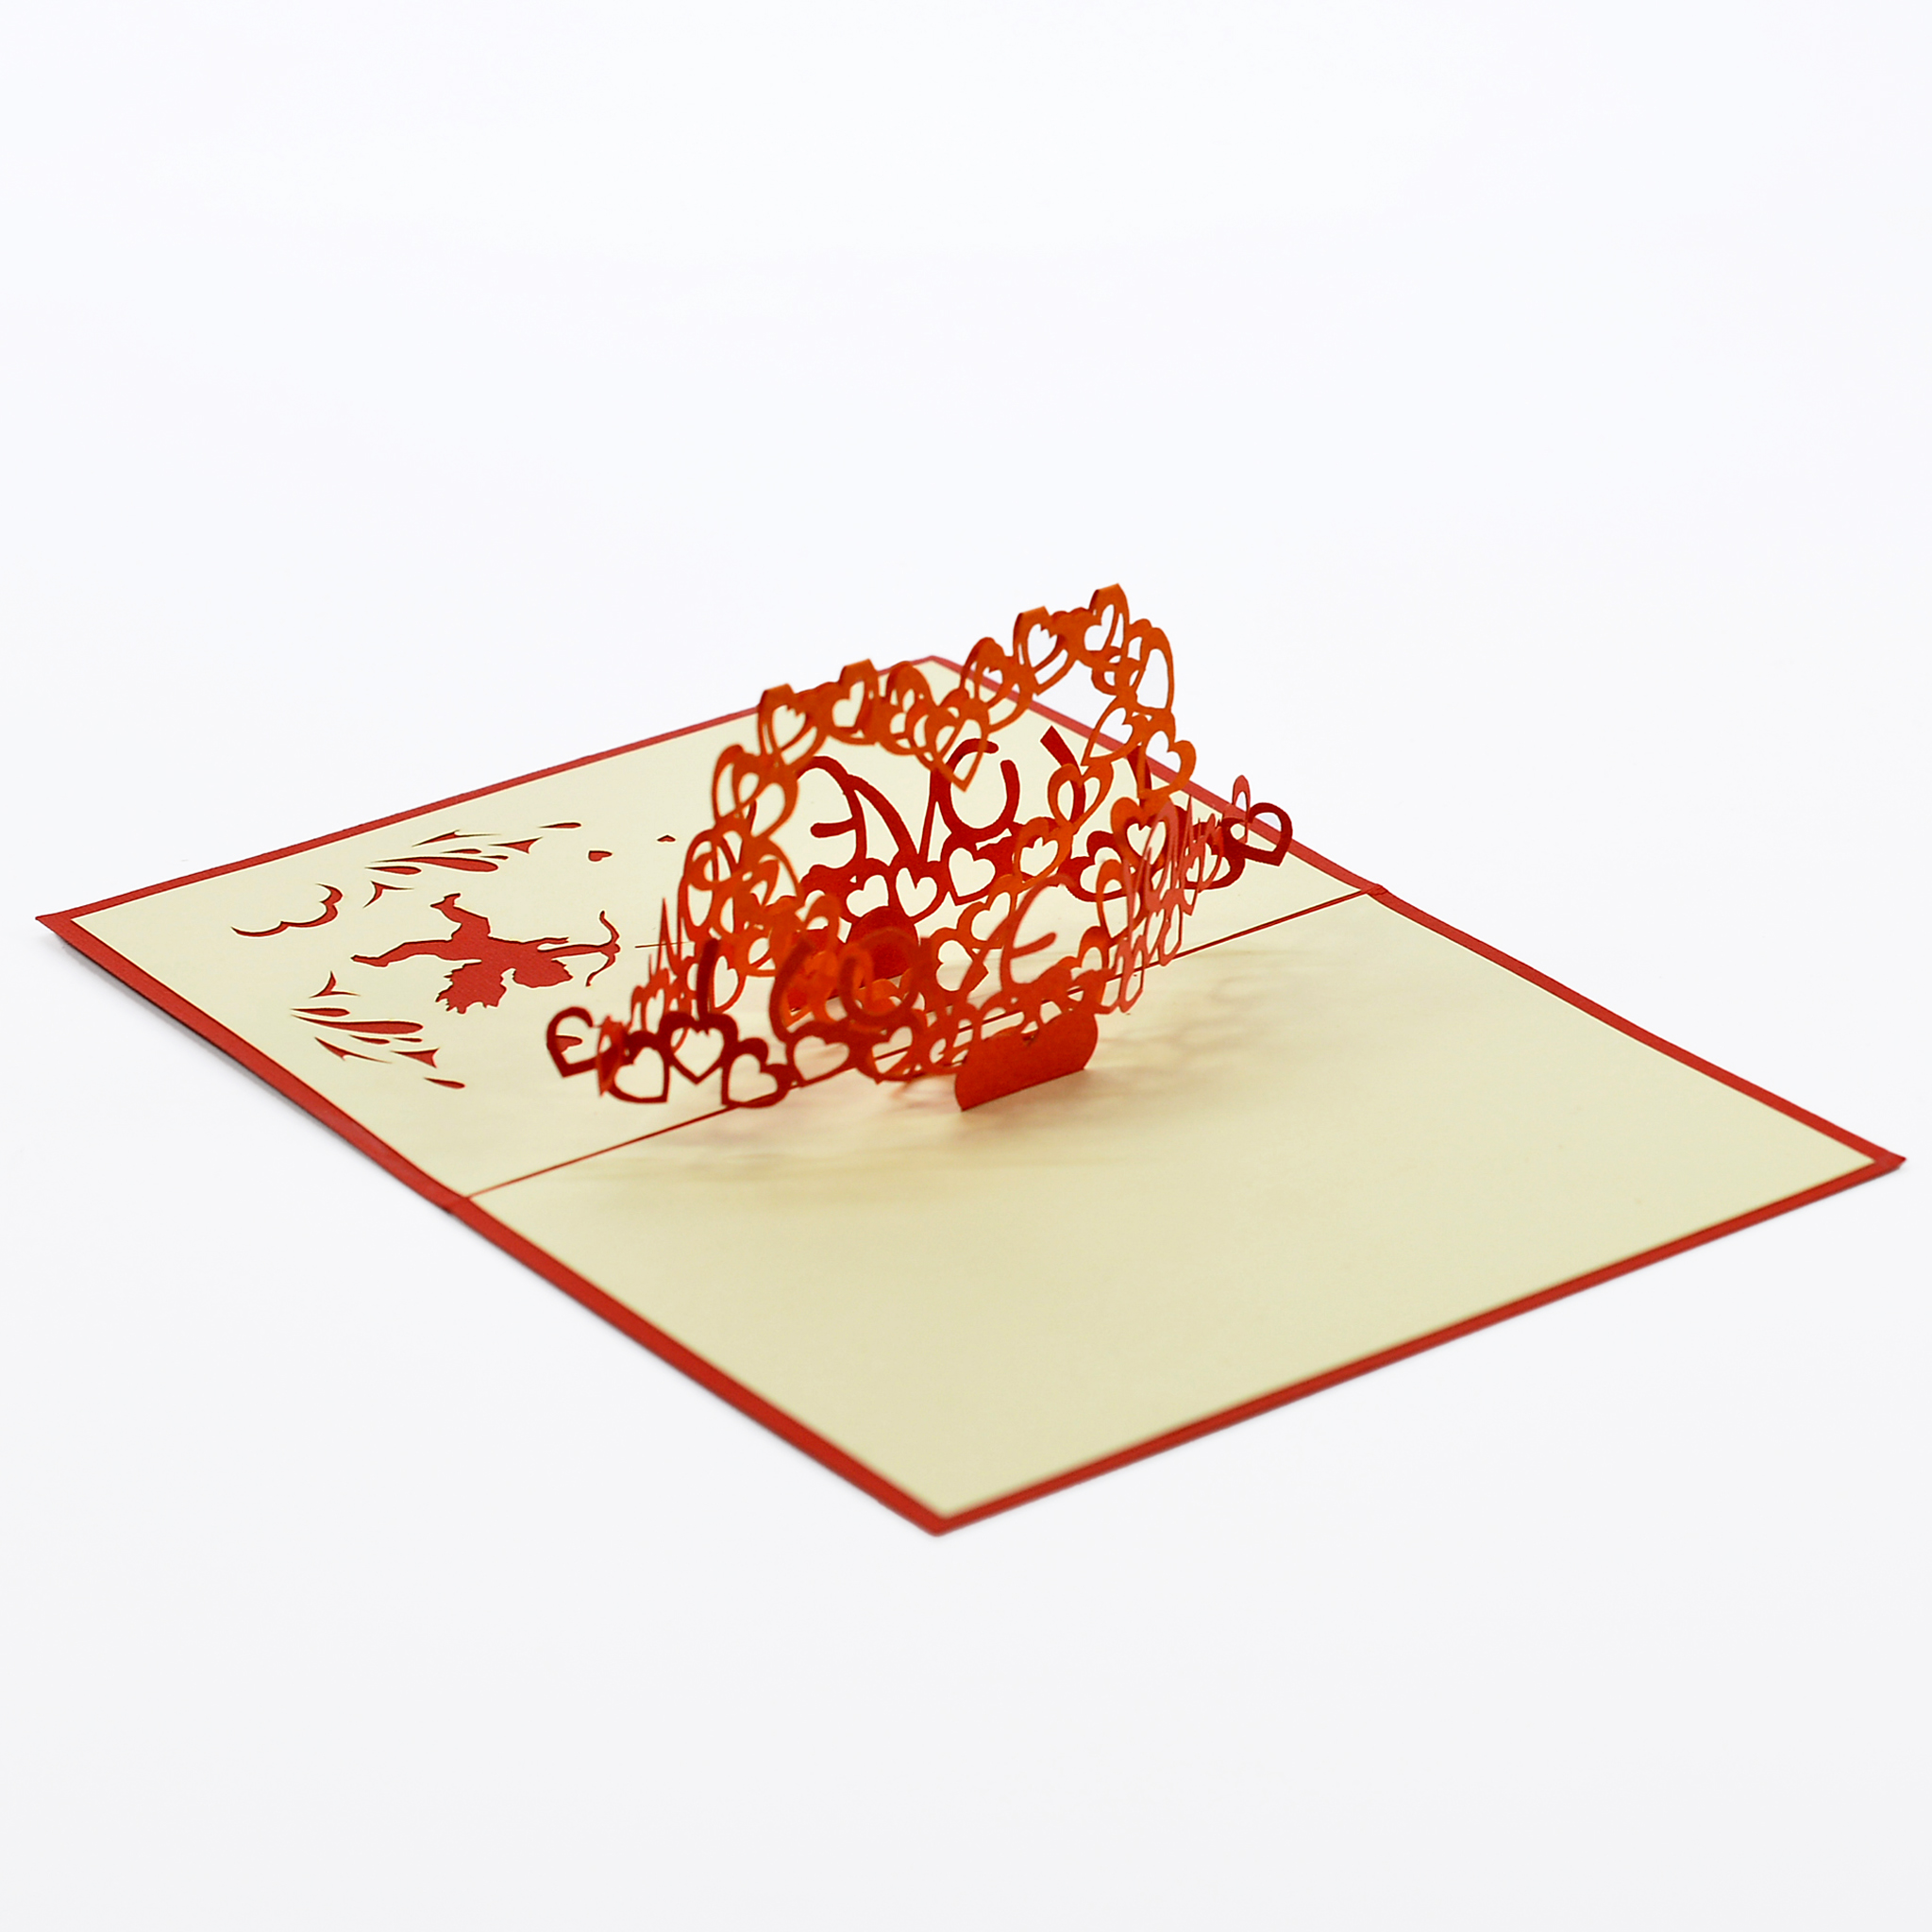 Thiệp 3D I Love You, Thiệp Nổi Handmade Bìa Đỏ, greeting 3D pop-up card size 10x15cm LO020